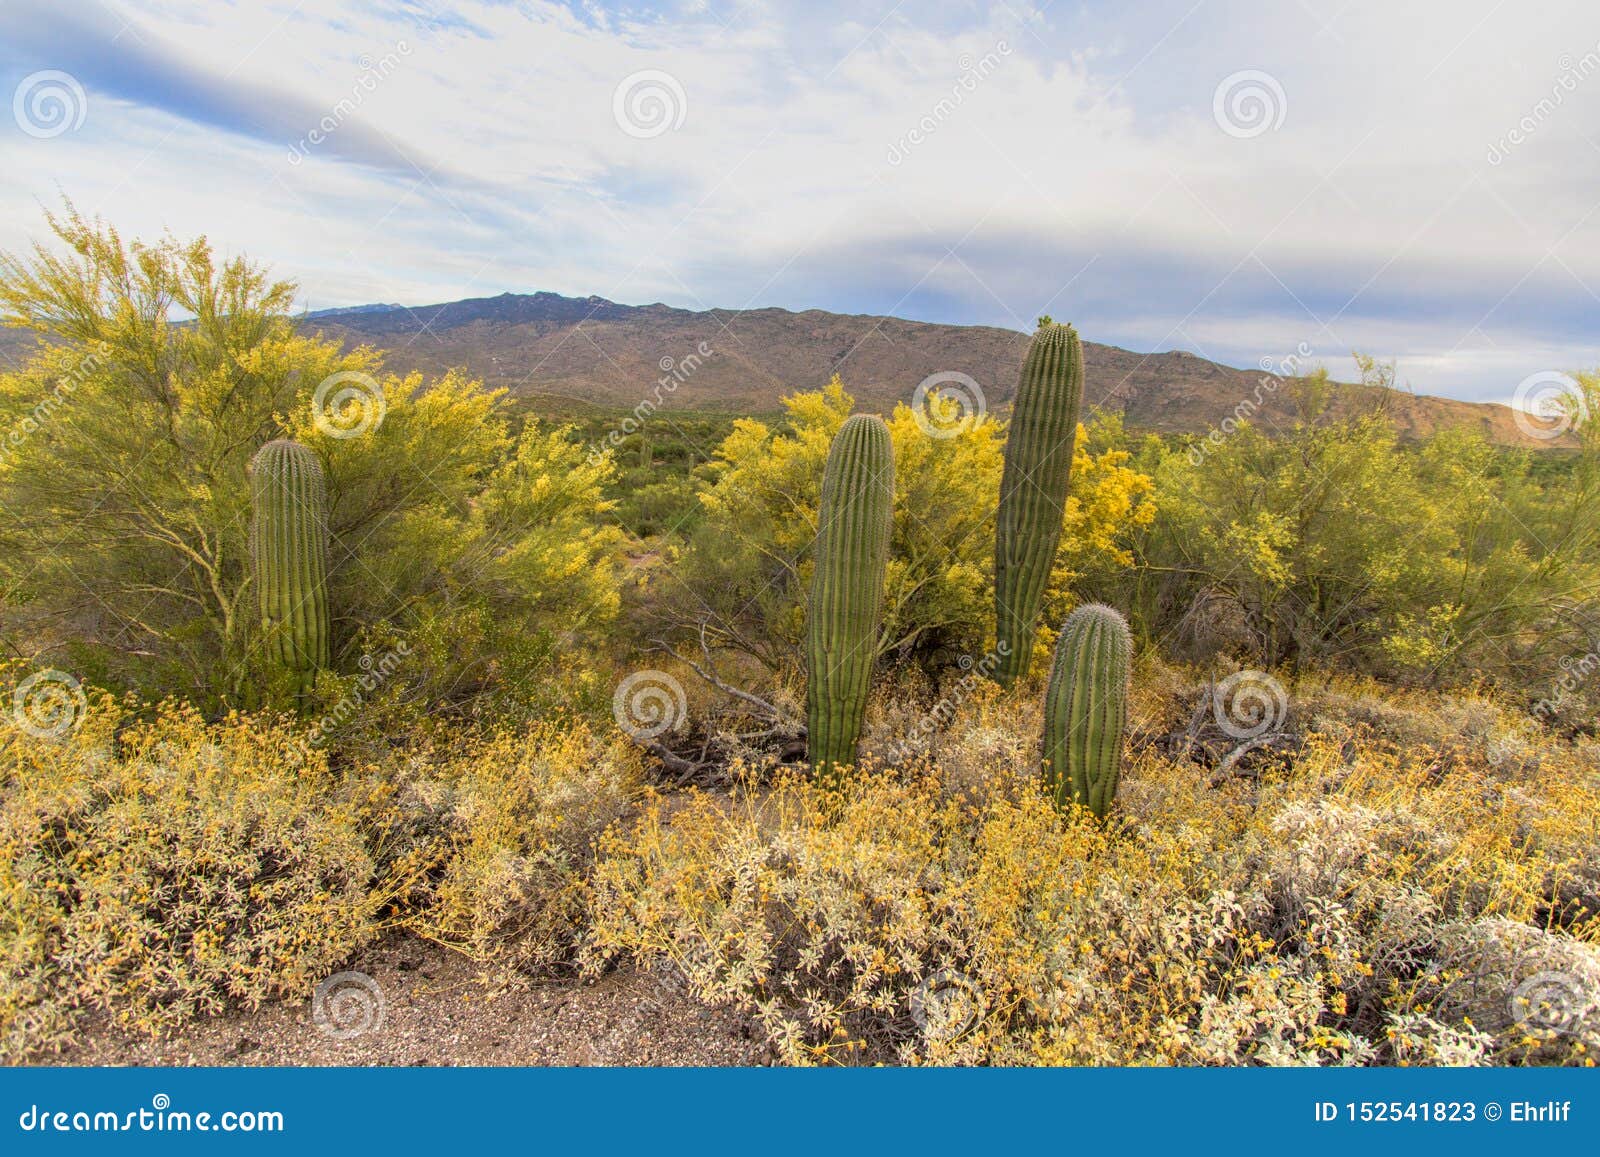 Tucson Arizona Saguaro Desert Landscape Stock Image - Image of ...